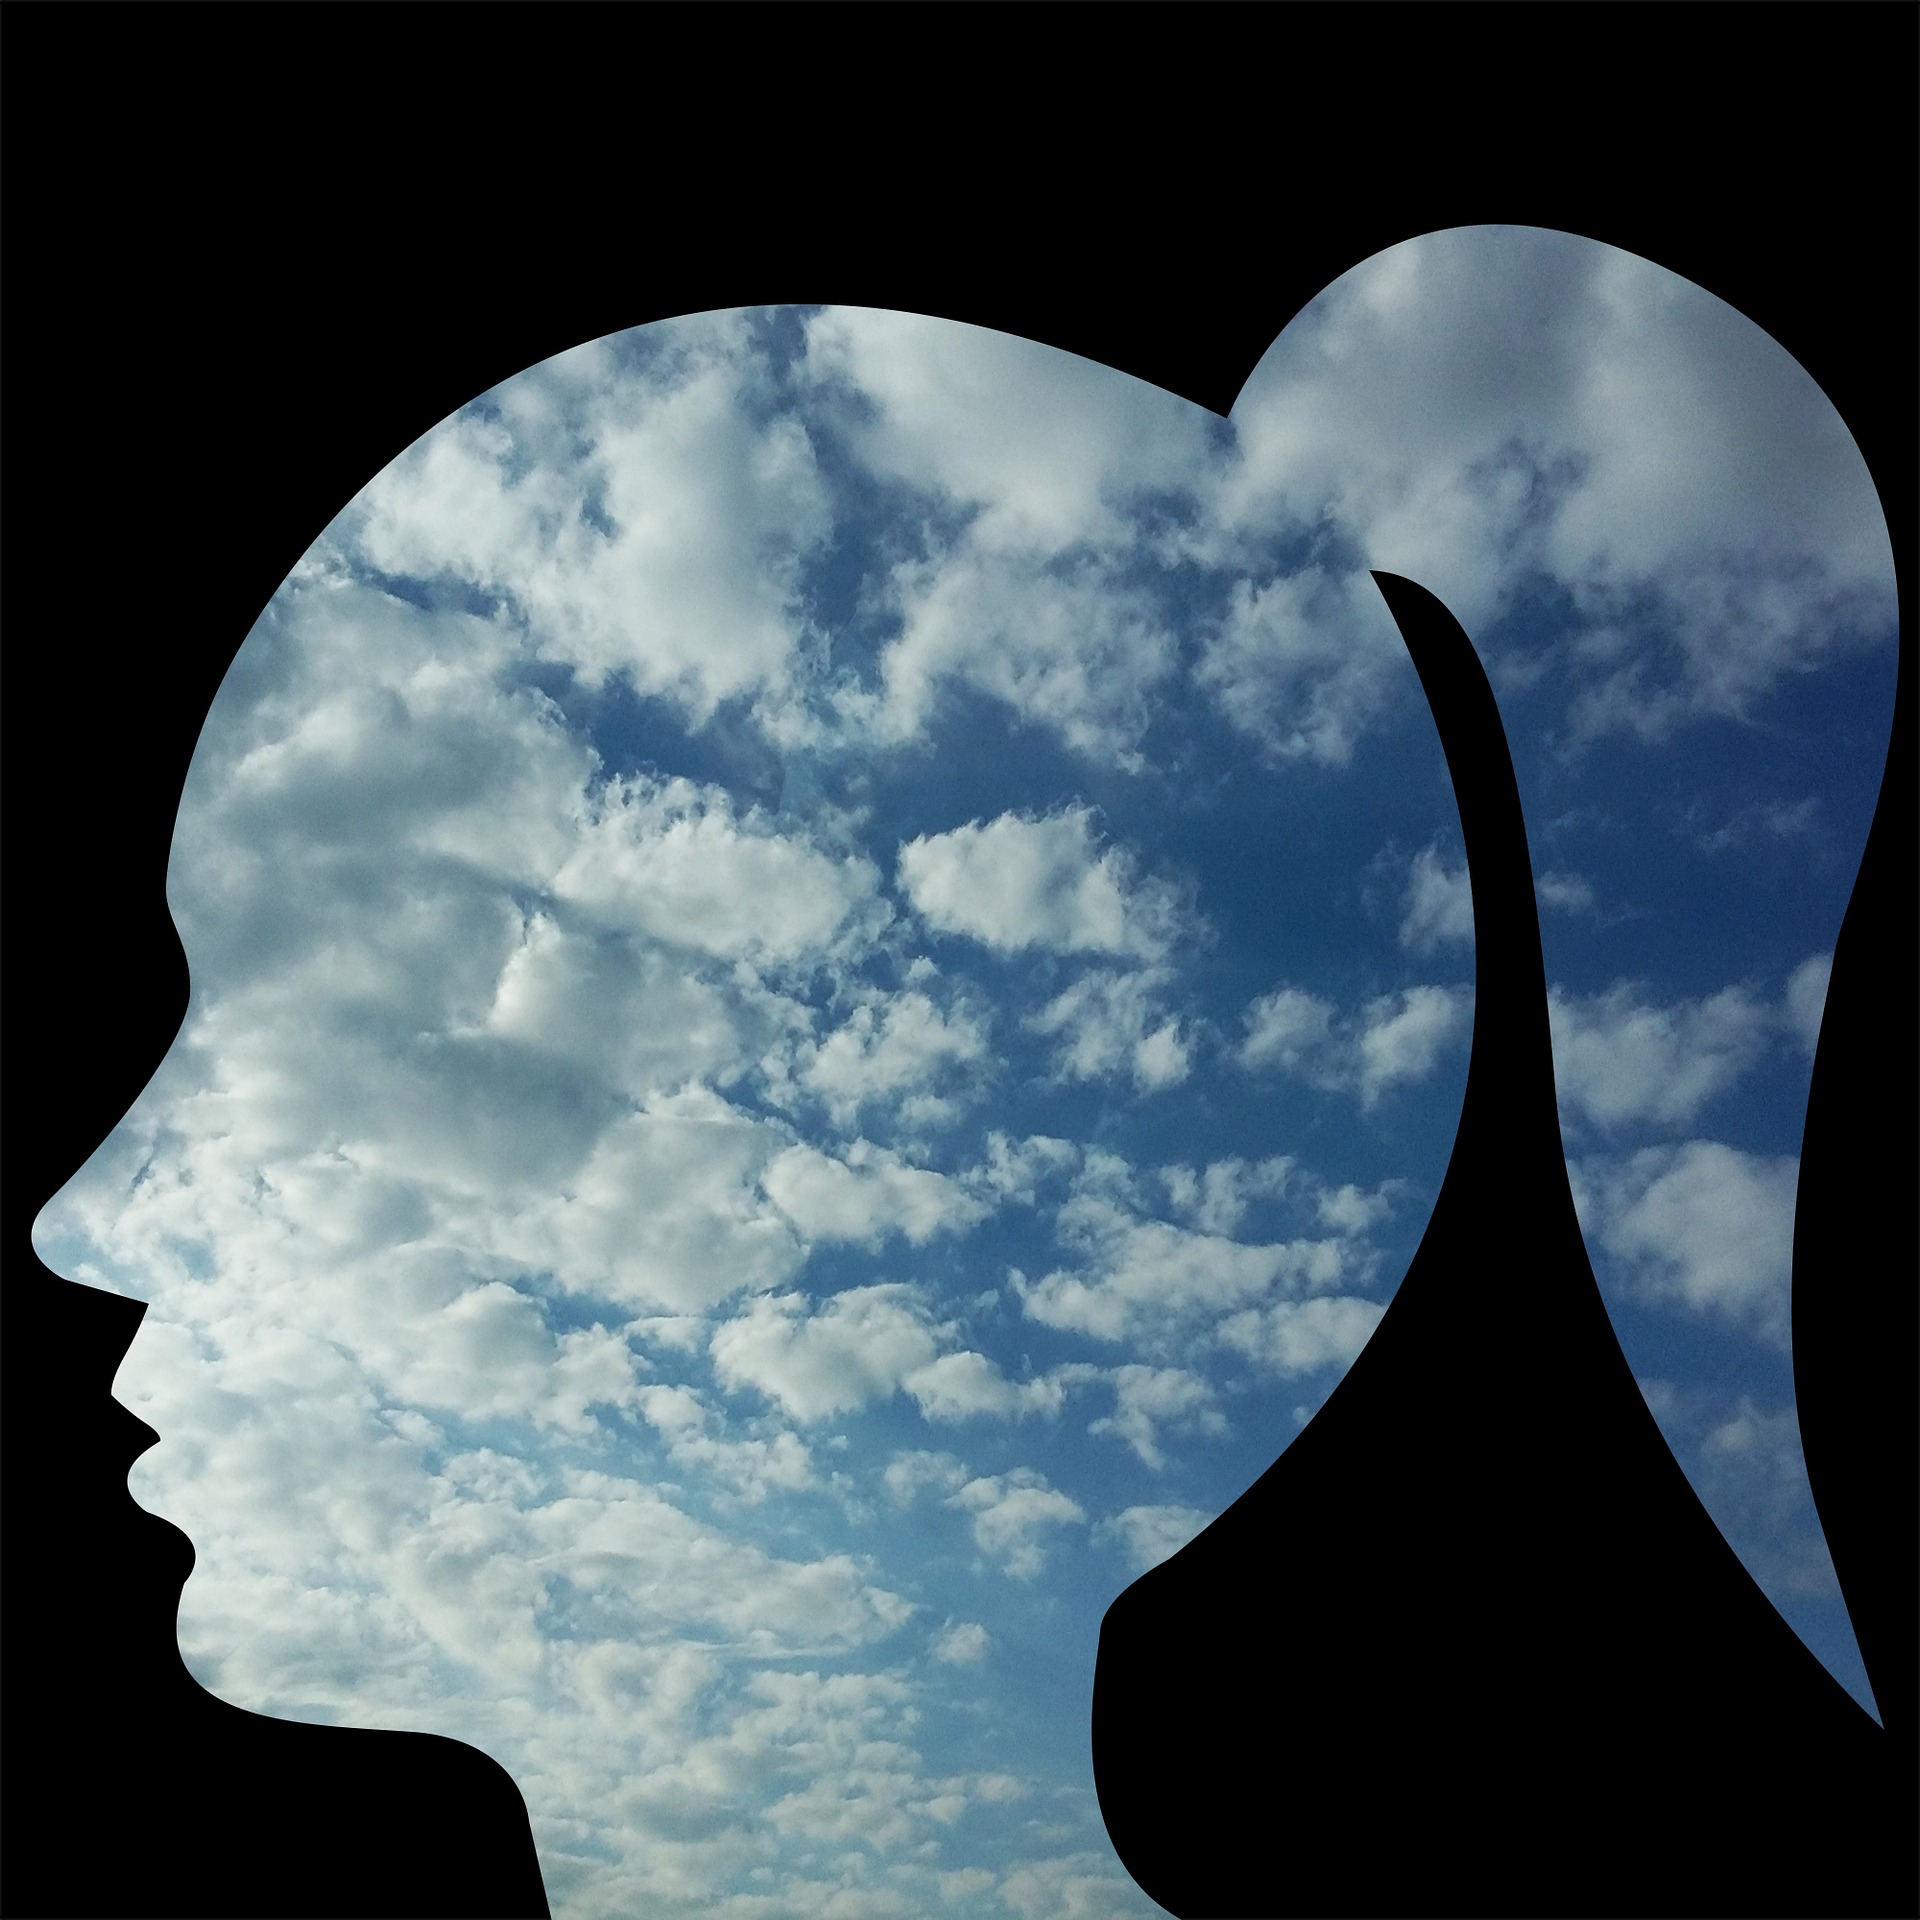 en la silueta de una cabeza femenina recortada sobre fondo negro, se insertan nubes y cielo.